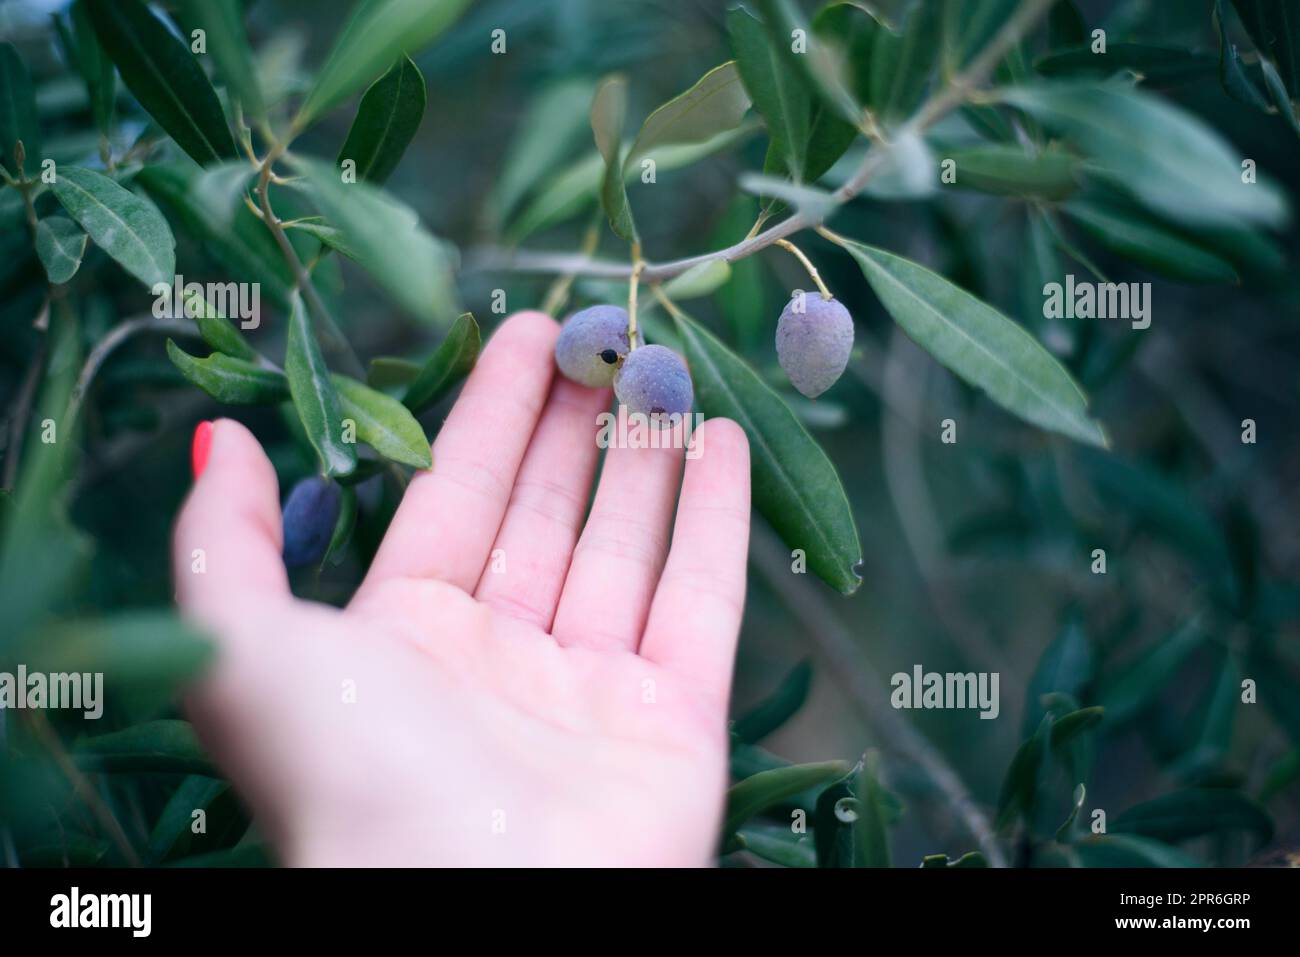 Une jeune fille tient dans ses mains une branche avec des olives noires mûres juteuses au coucher du soleil, une femme est engagée dans l'agriculture et le jardinage, développe une plantation de o Banque D'Images